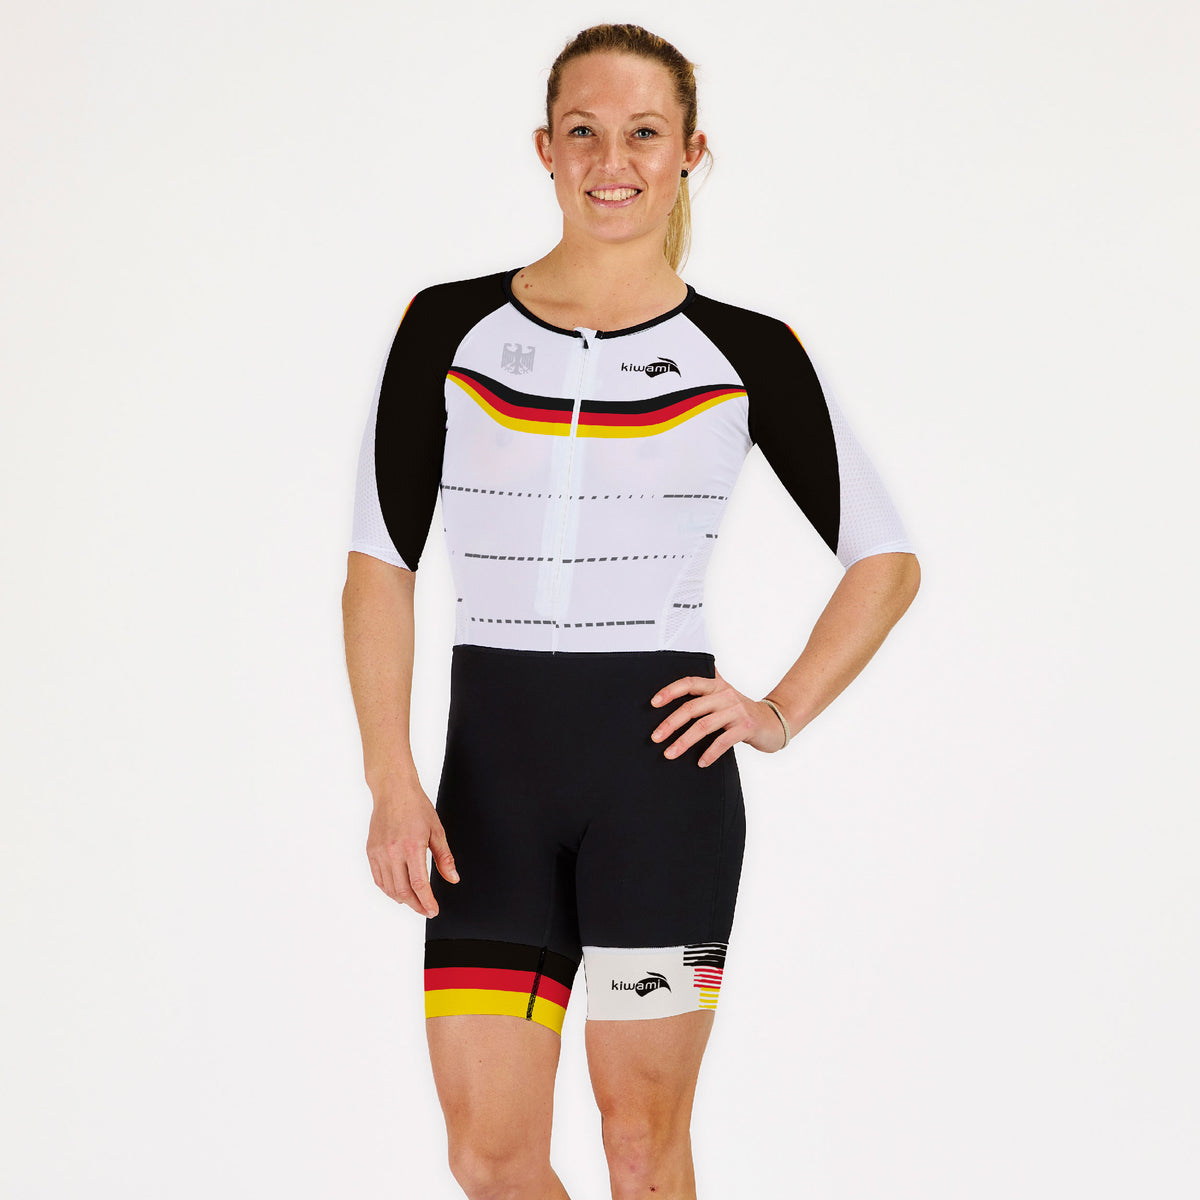 Kombination für Triathlon, eine Damen-Trisuit, speziell für Langdistanz-Triathlons wie Ironmans entwickelt